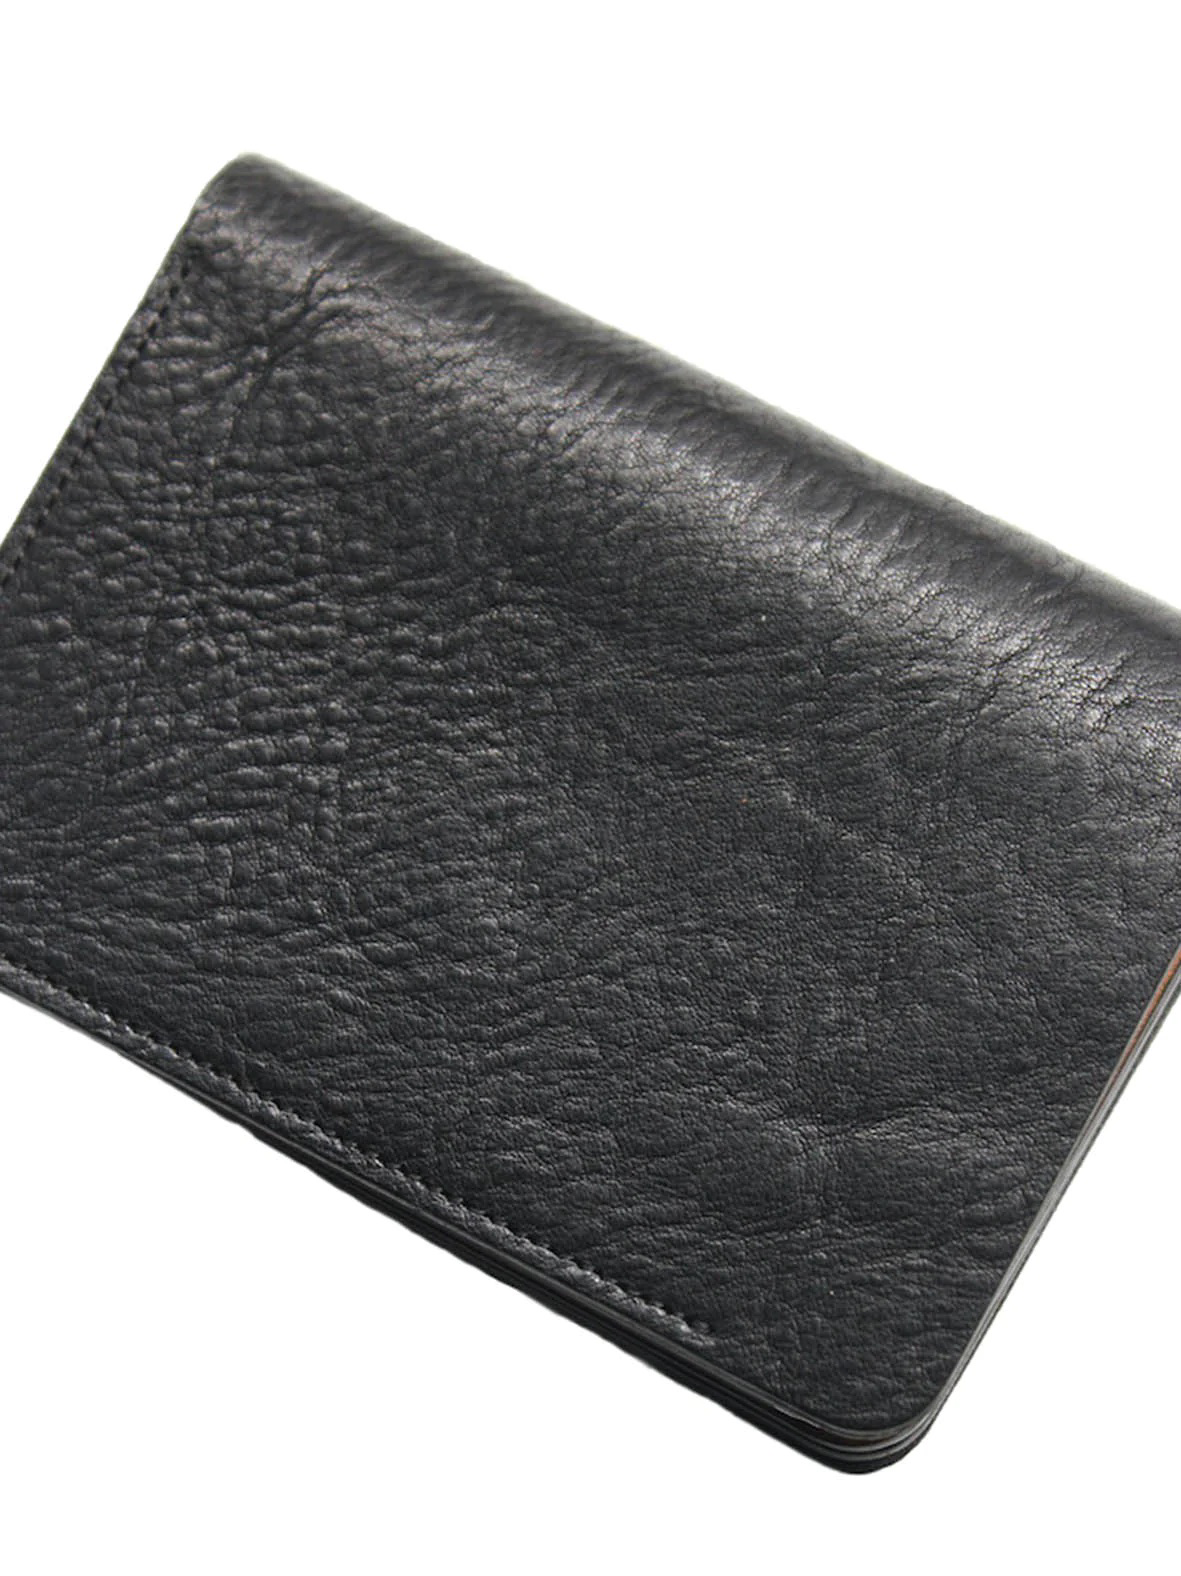 forme / Short wallet "Tigres/black"